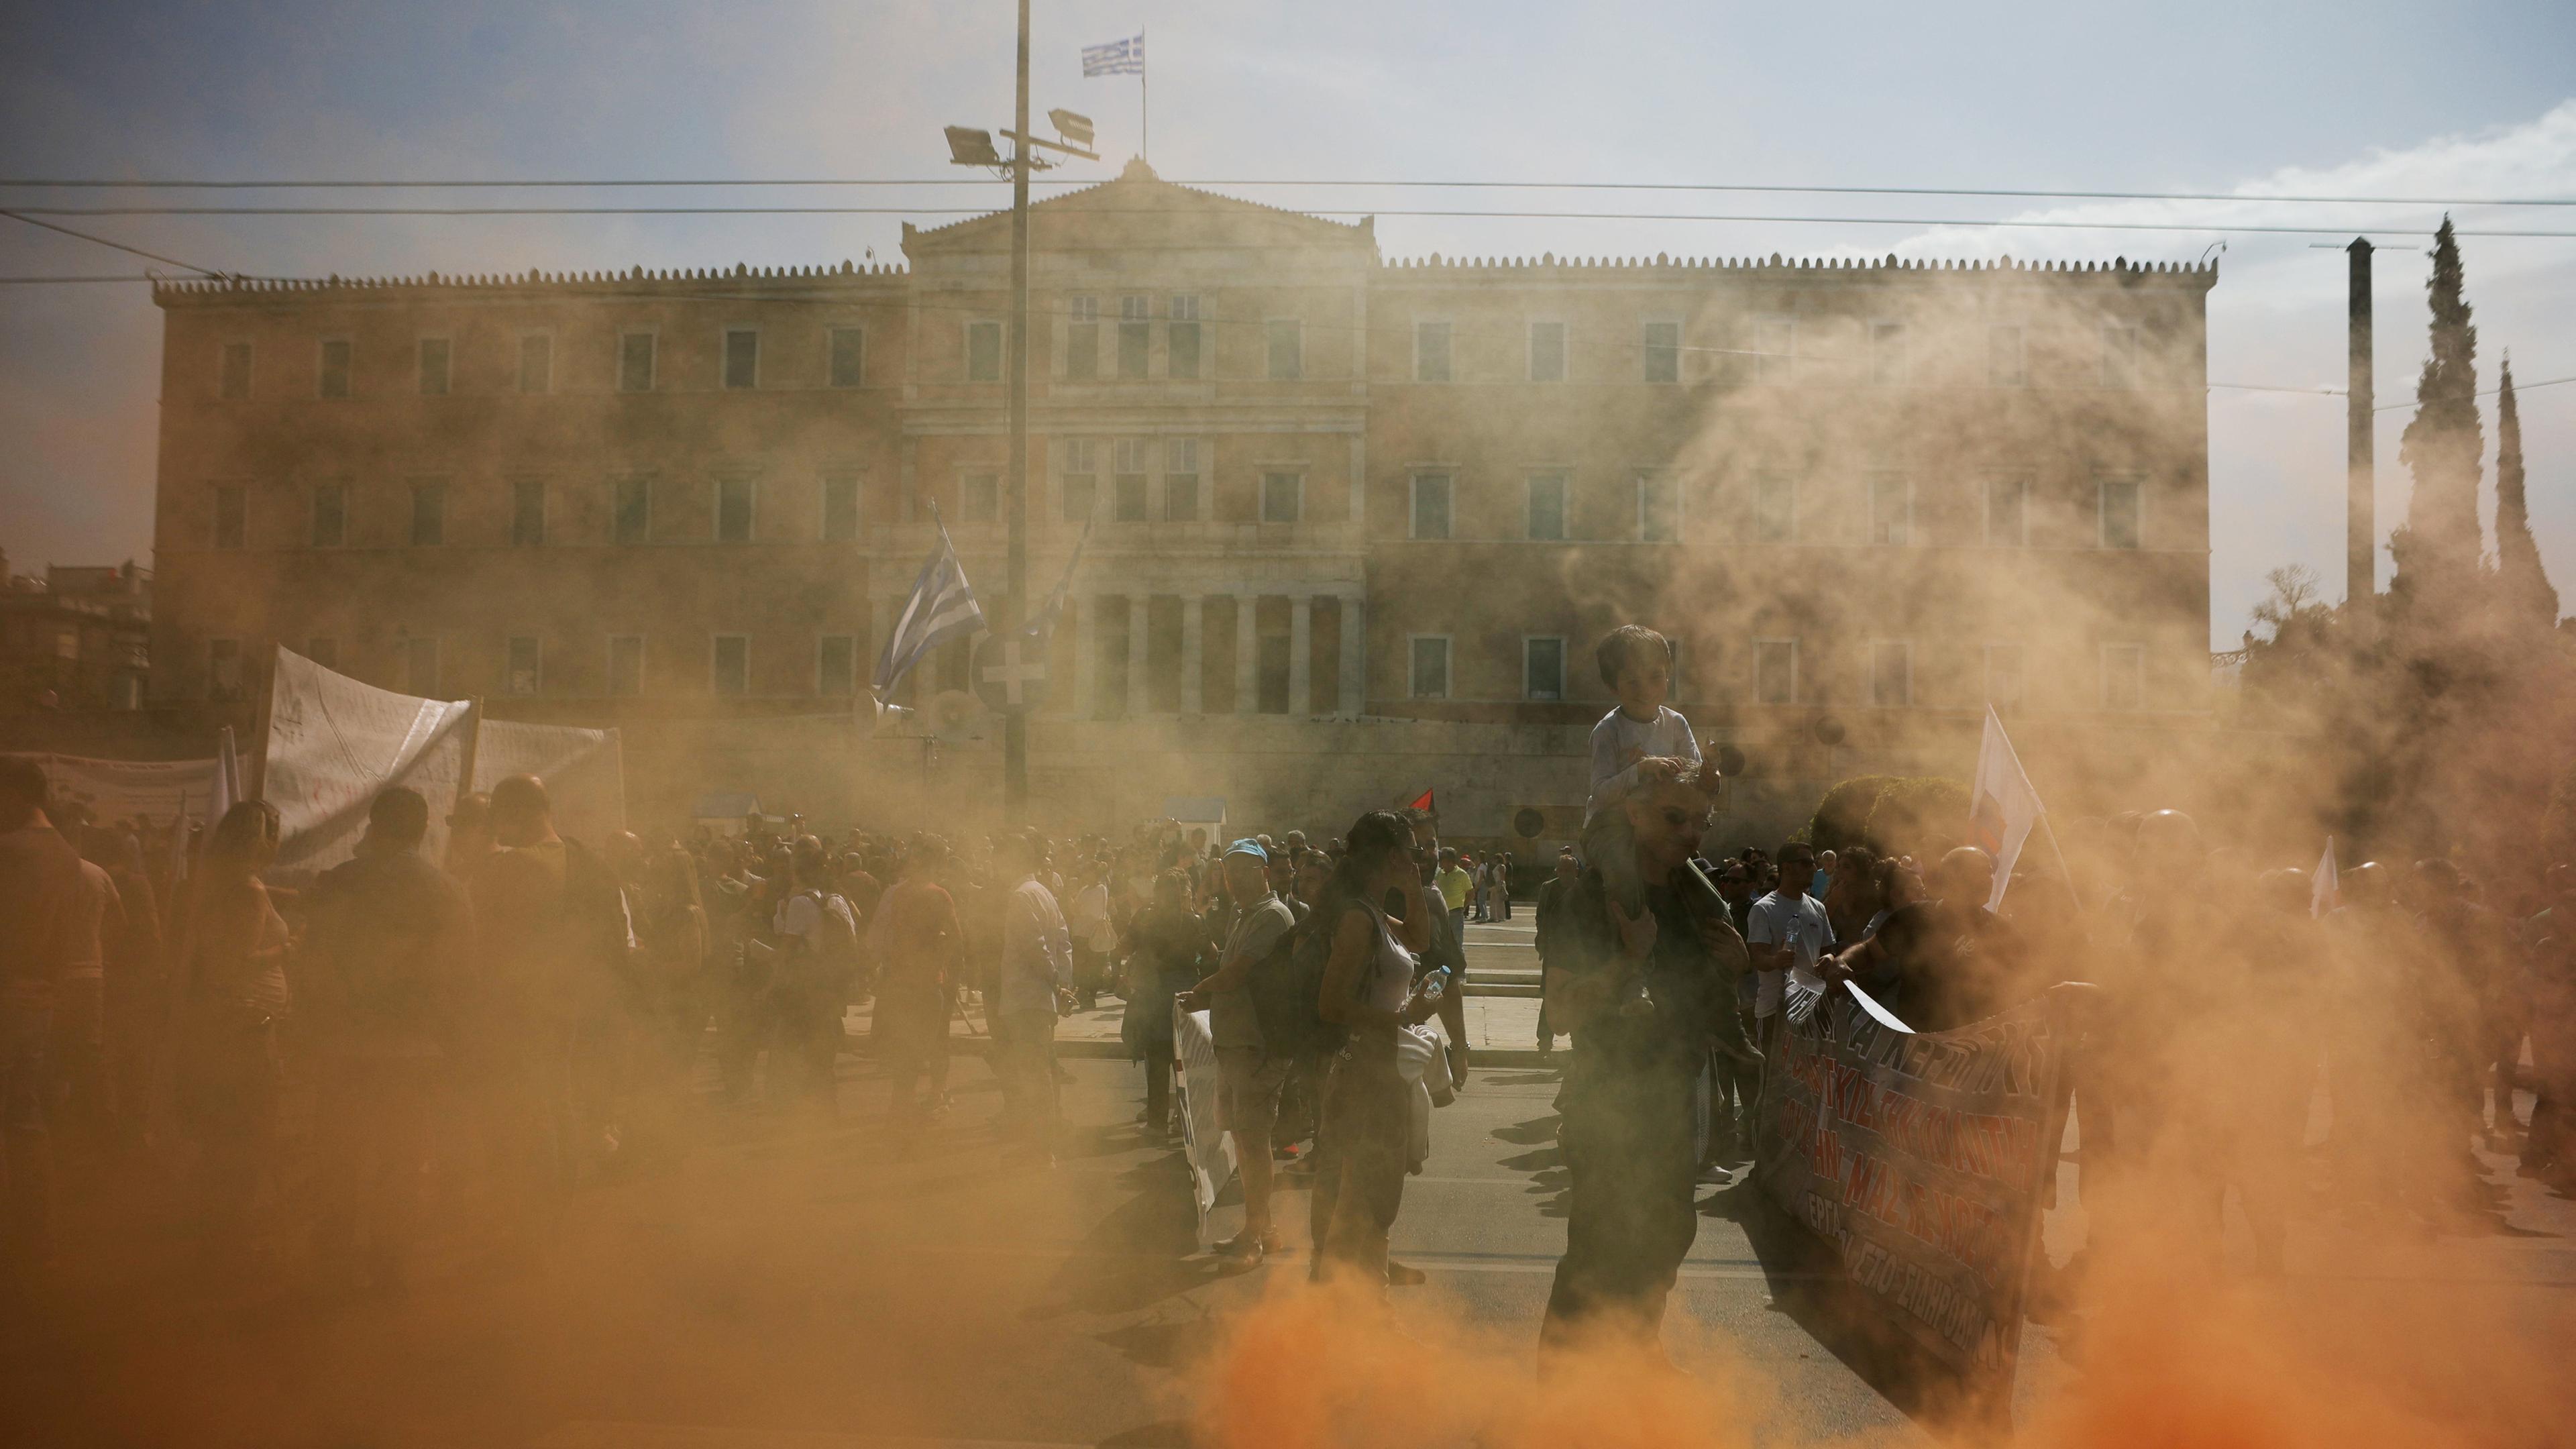 Menschen nehmen an einem Protest teil, während eines 24-stündigen Generalstreiks in Athen. Rauch steigt aus einer Rauchfackel auf.